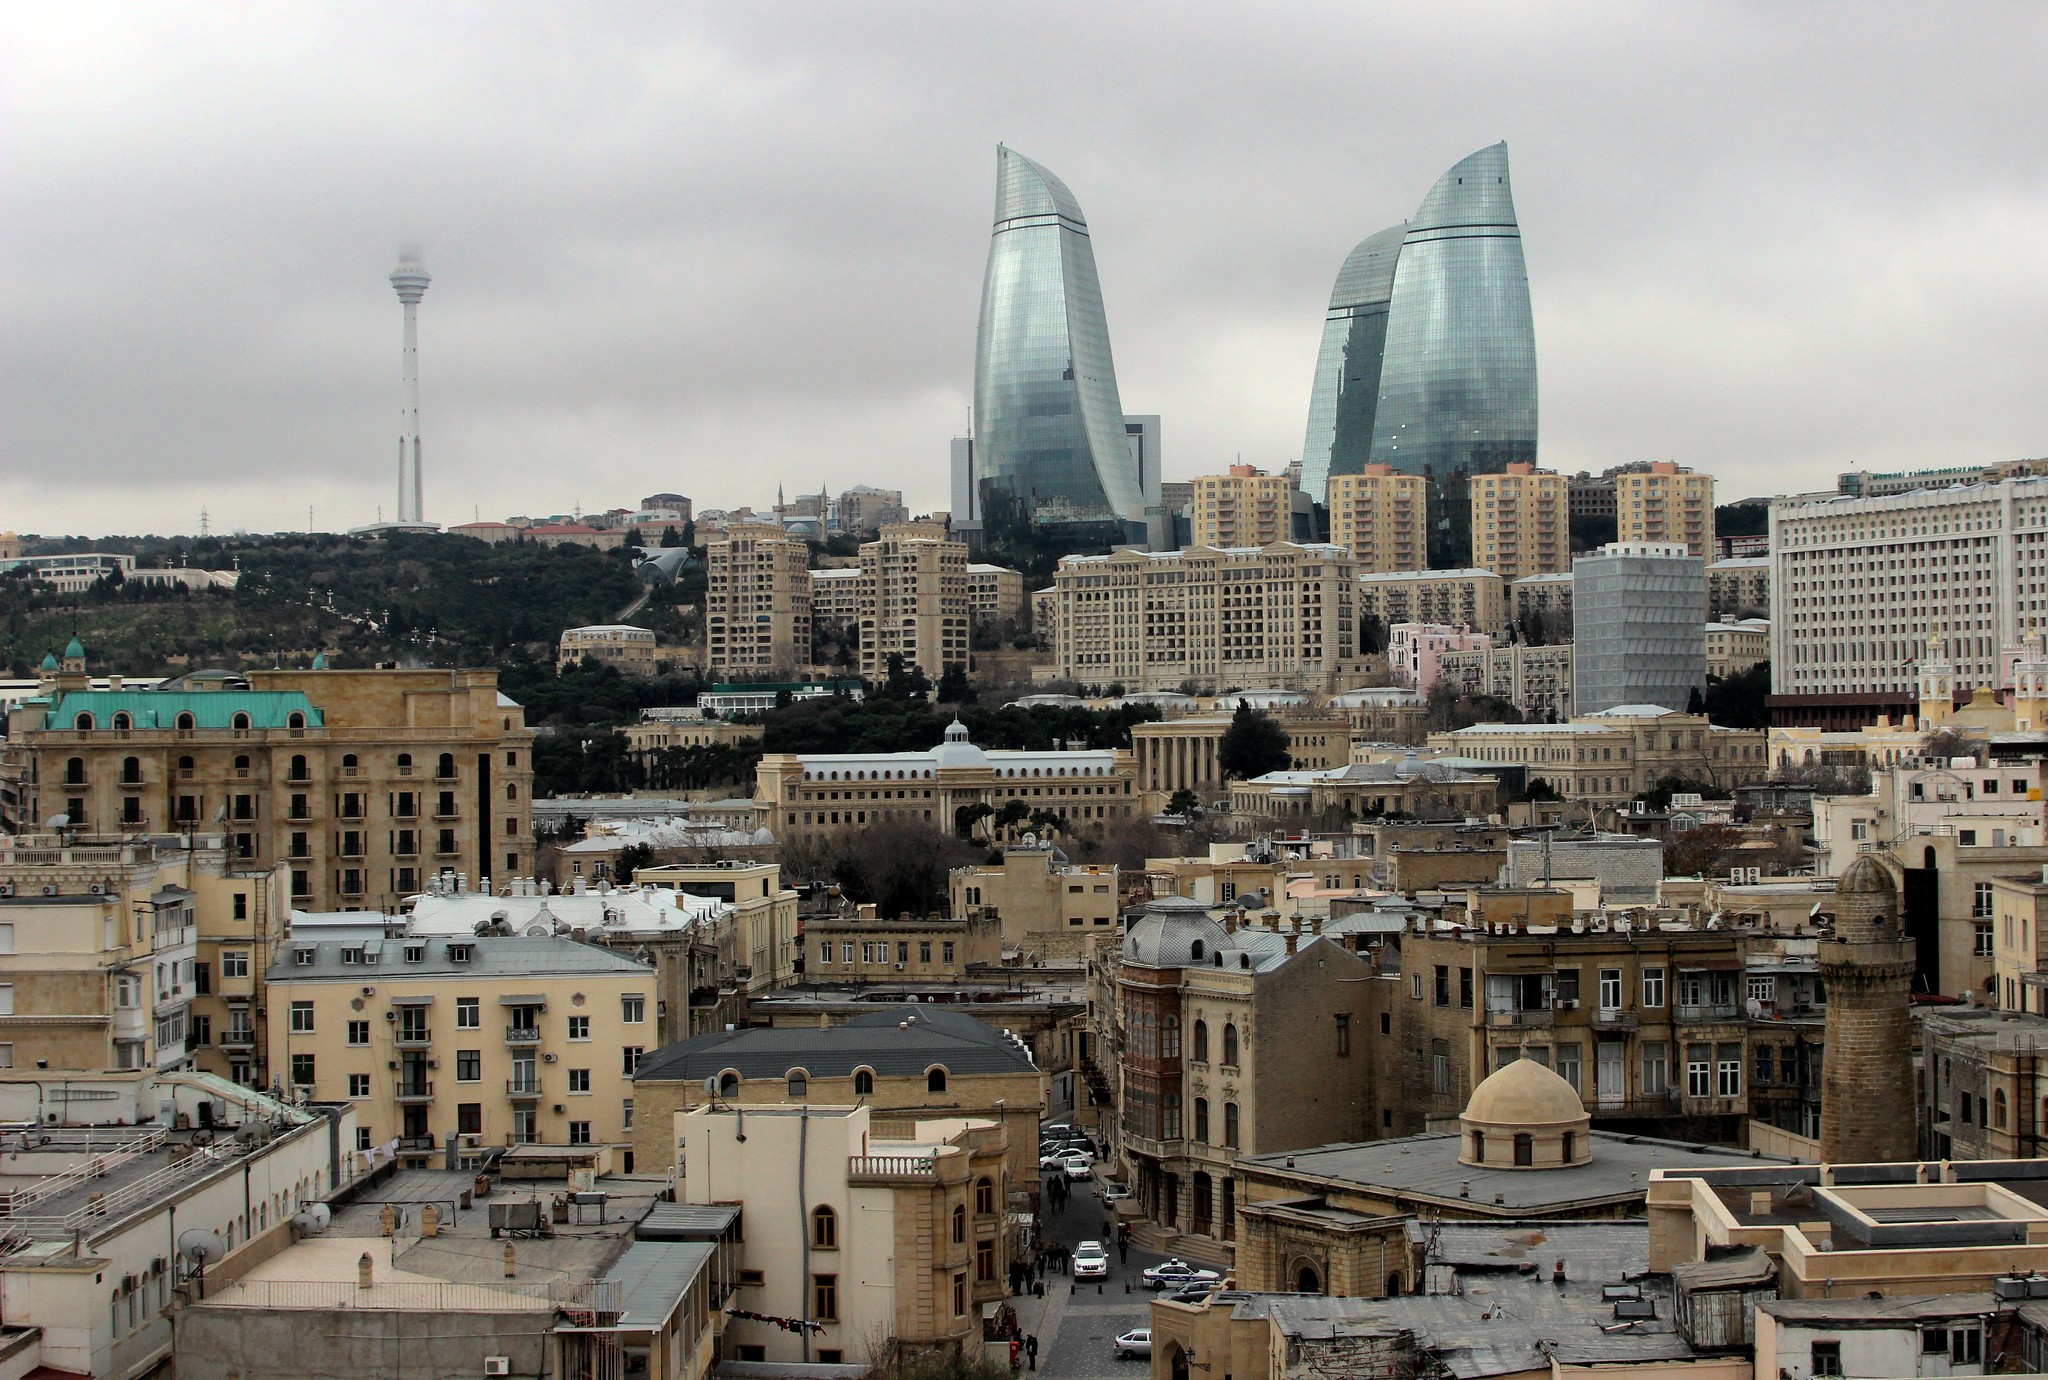 flame towers in baku, azerbaijan